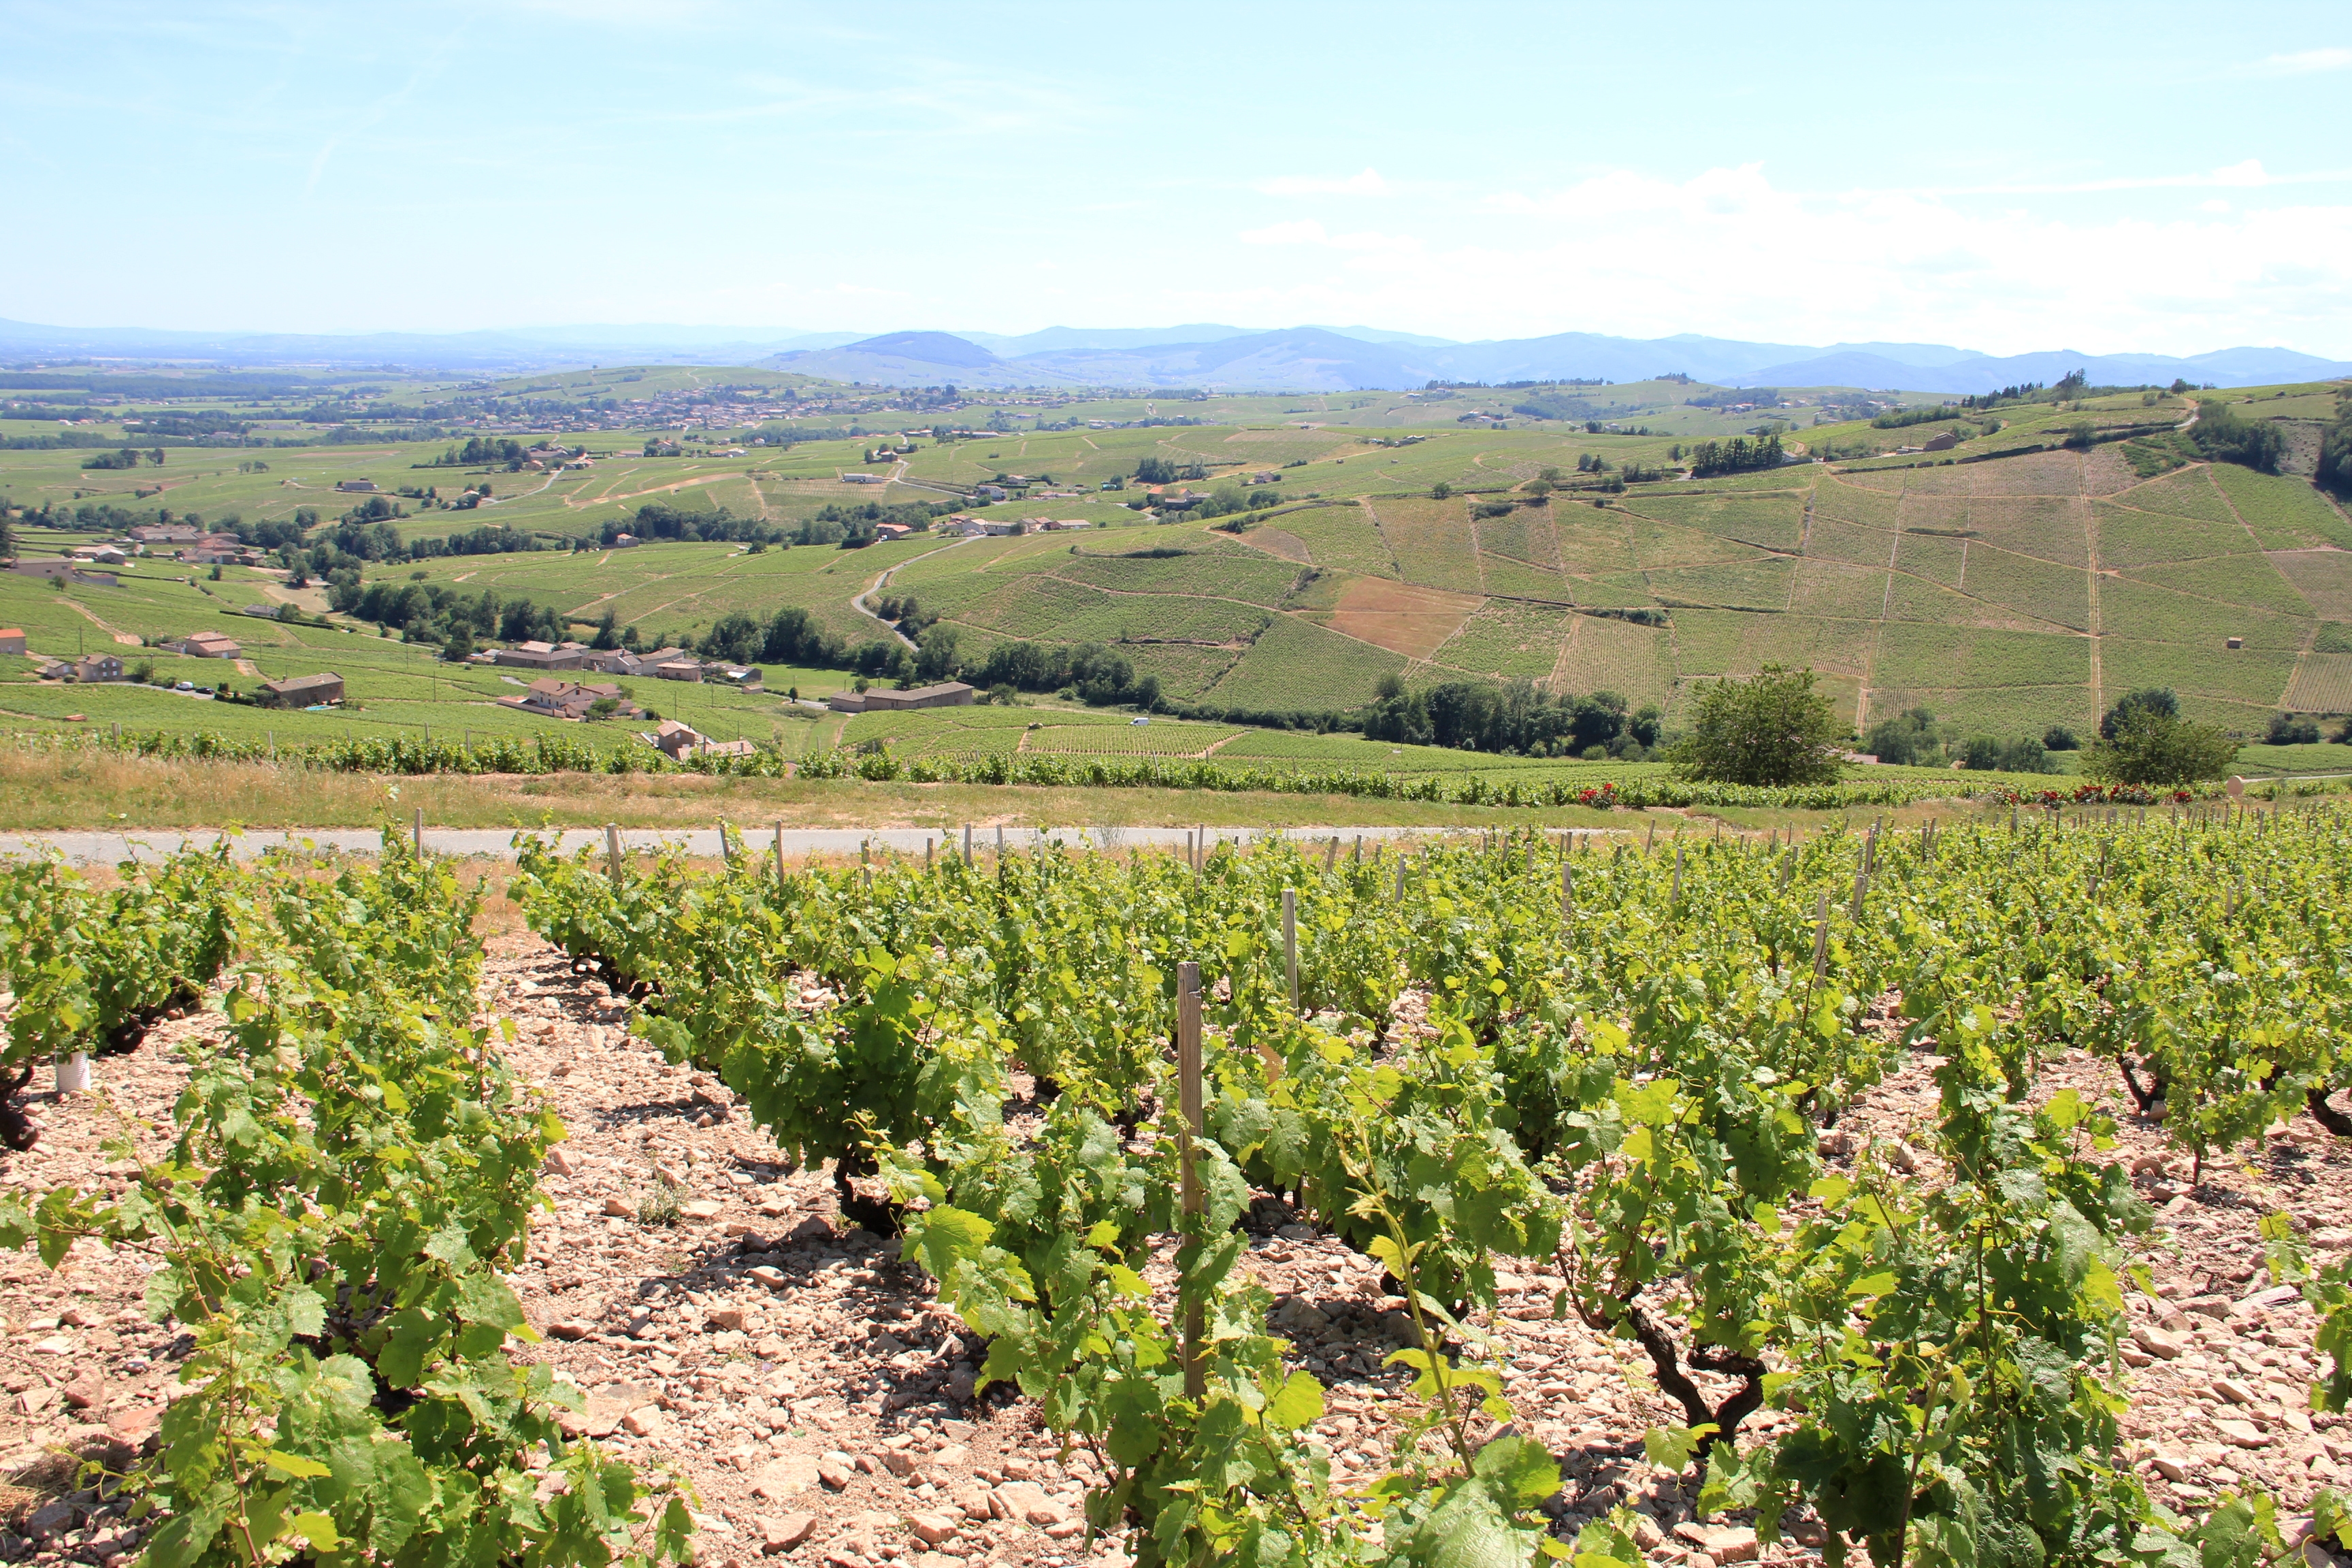 Dans les vignes du Beaujolais